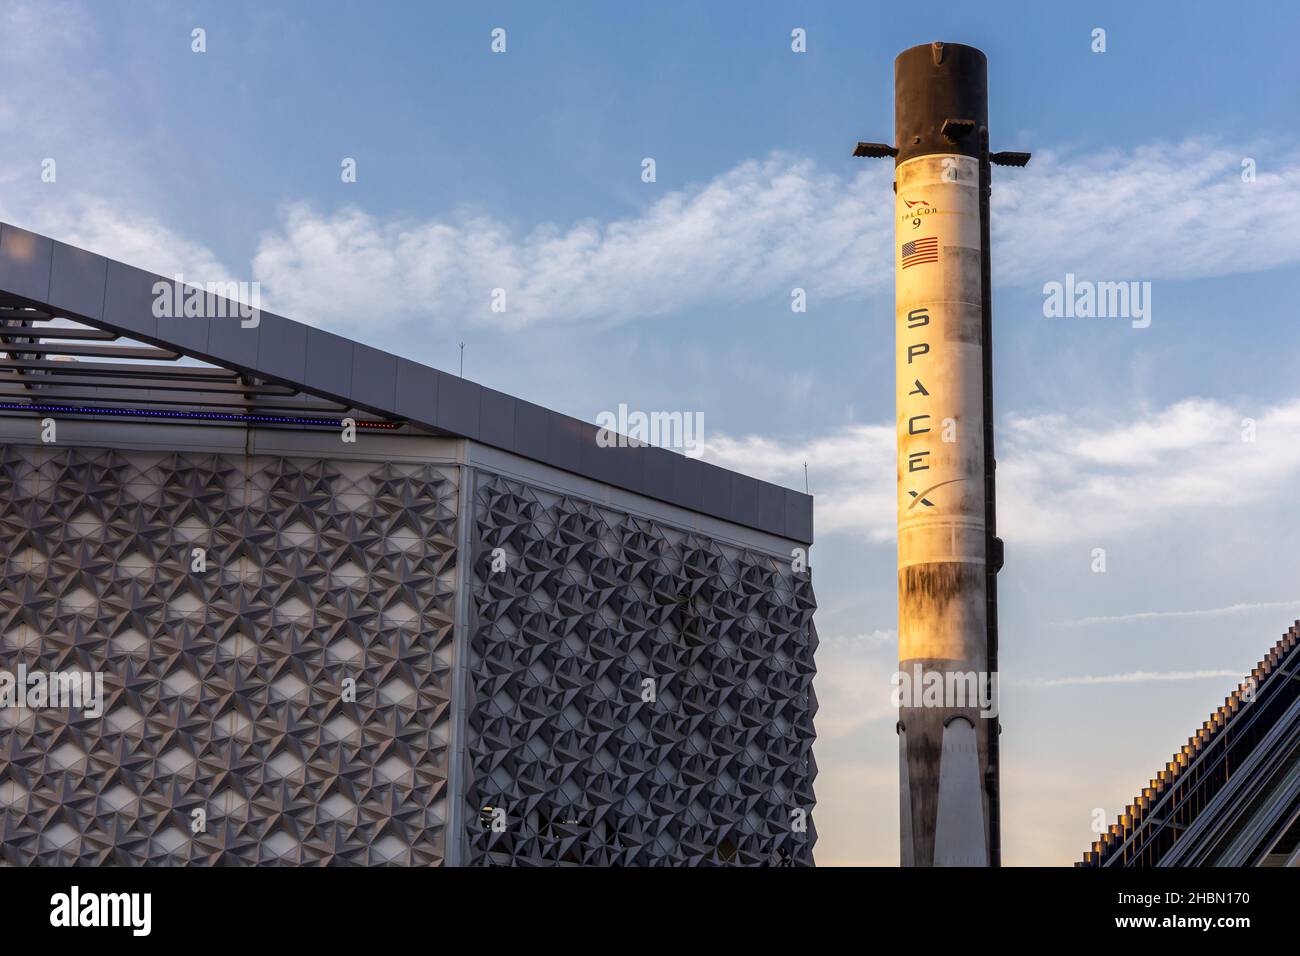 Dubai, VAE, 09.12.2021. Falcon 9 Space X, ein wiederverwendbares Medium-Lift-Trägerfahrzeug mit zwei Stufen und Umlaufbahn, das neben dem Gebäude des USA Pavilion auf der Expo 2020 ausgestellt wird Stockfoto